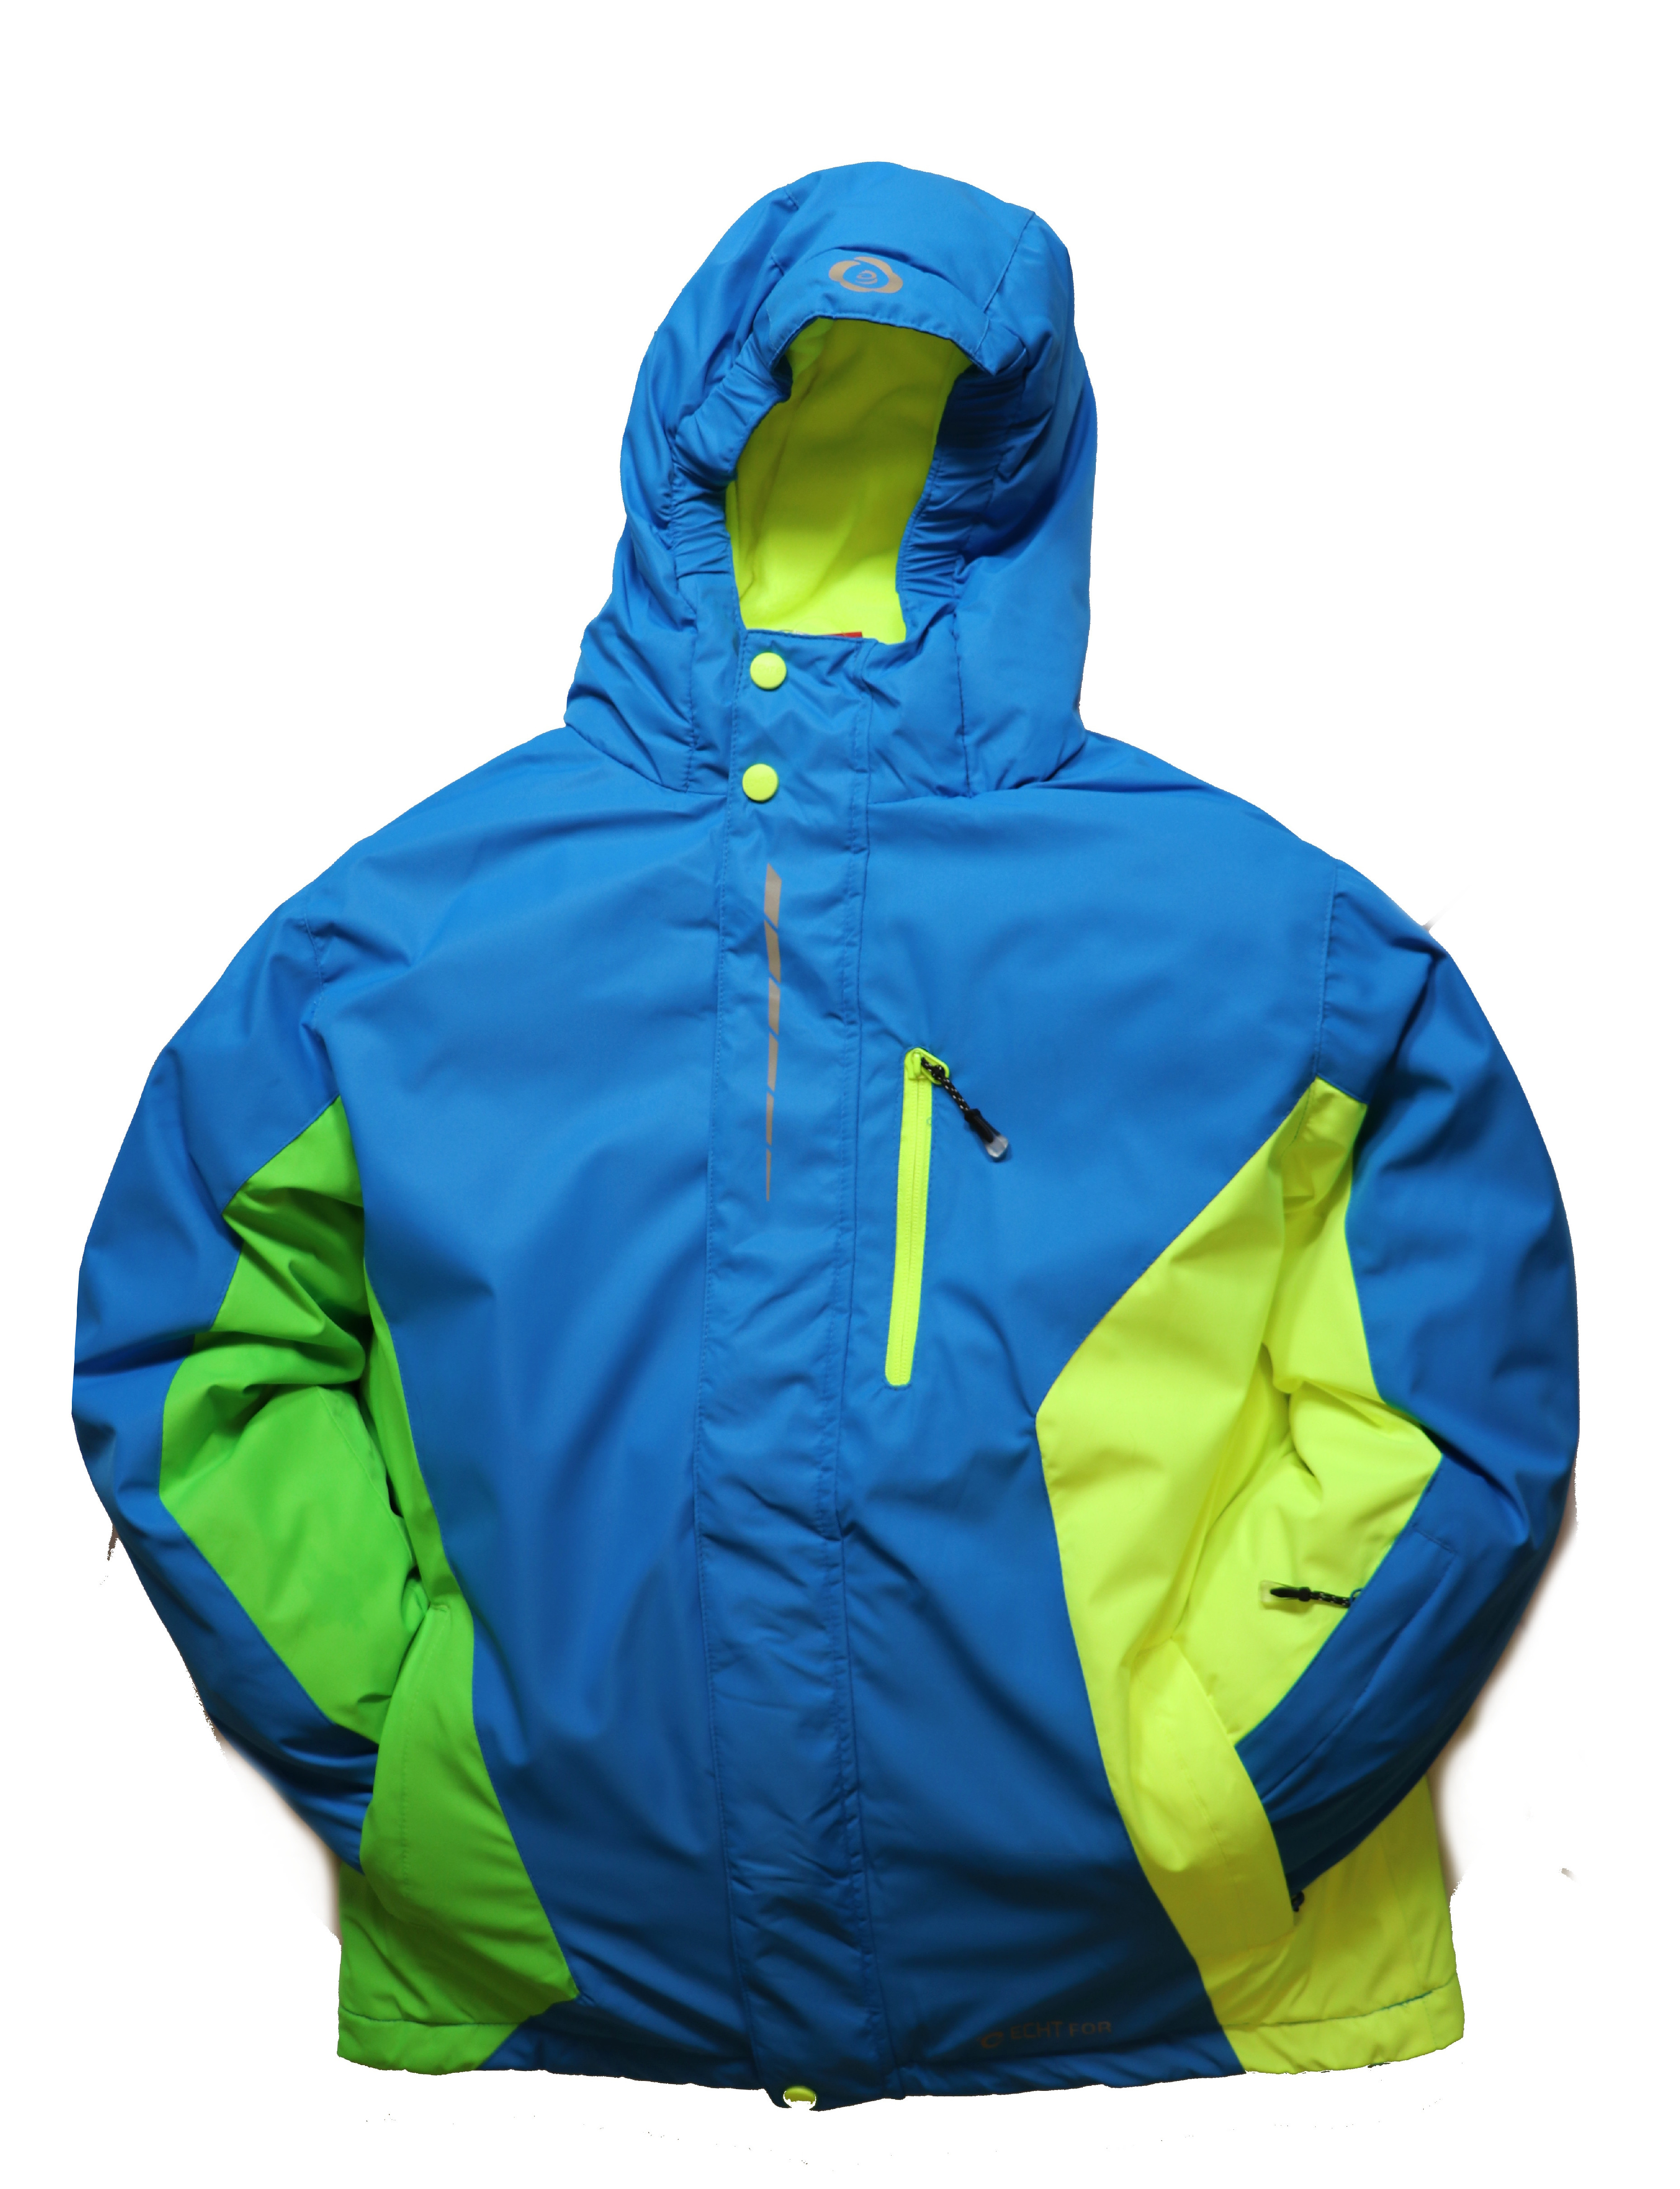 Dětská lyžařská bunda HA02-M2 modrá vel. 134-164 cm Barva: Modrá, Velikost: 134 - 140 cm